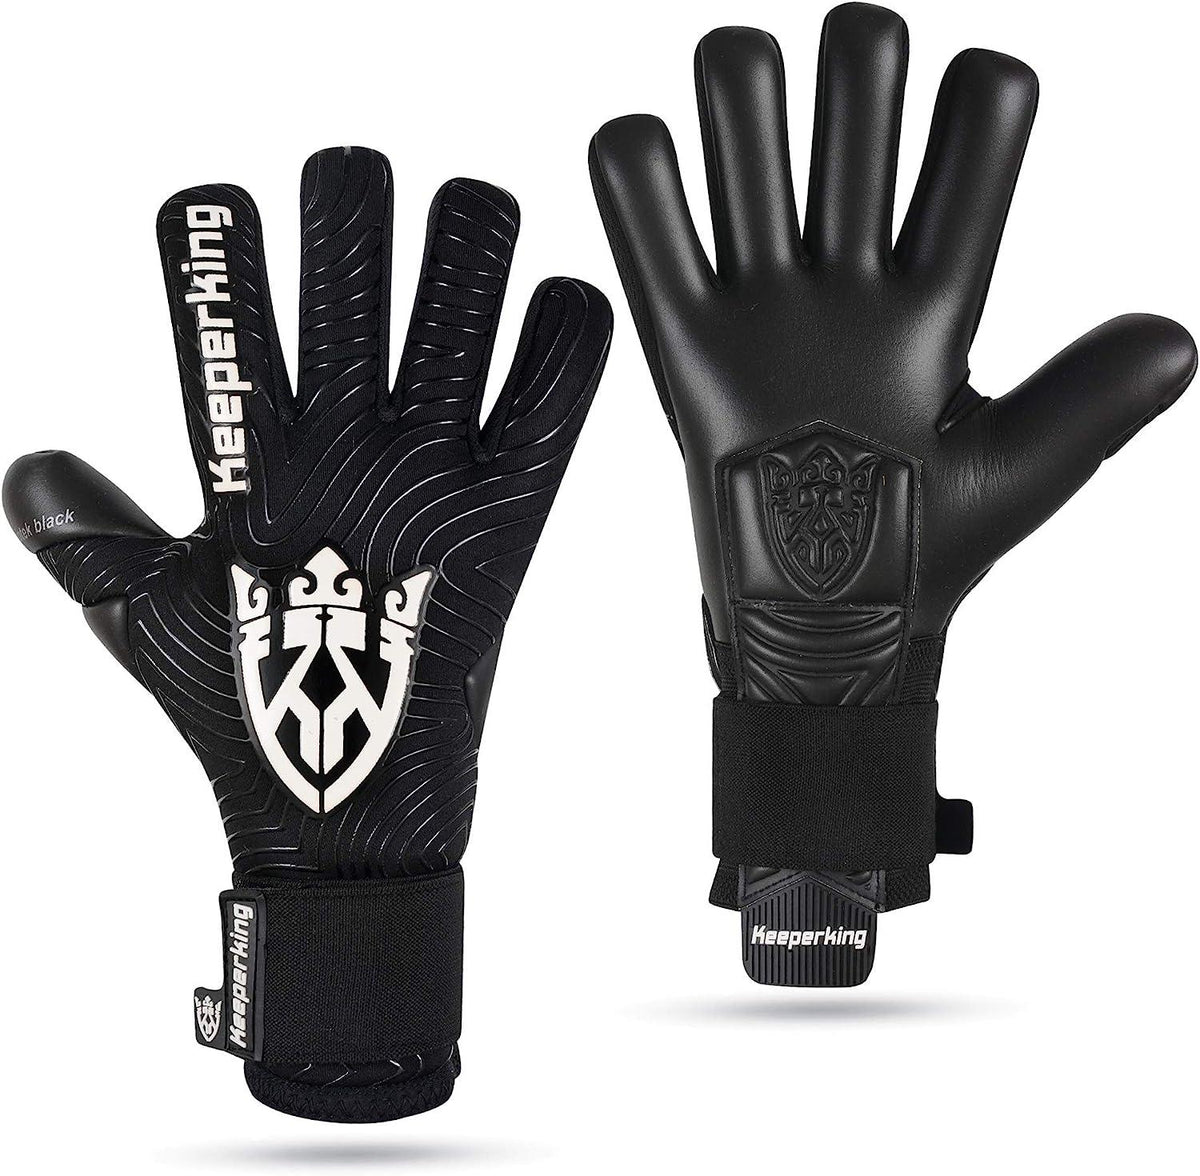 Eurotek black and white negative cut goalkeeper glove